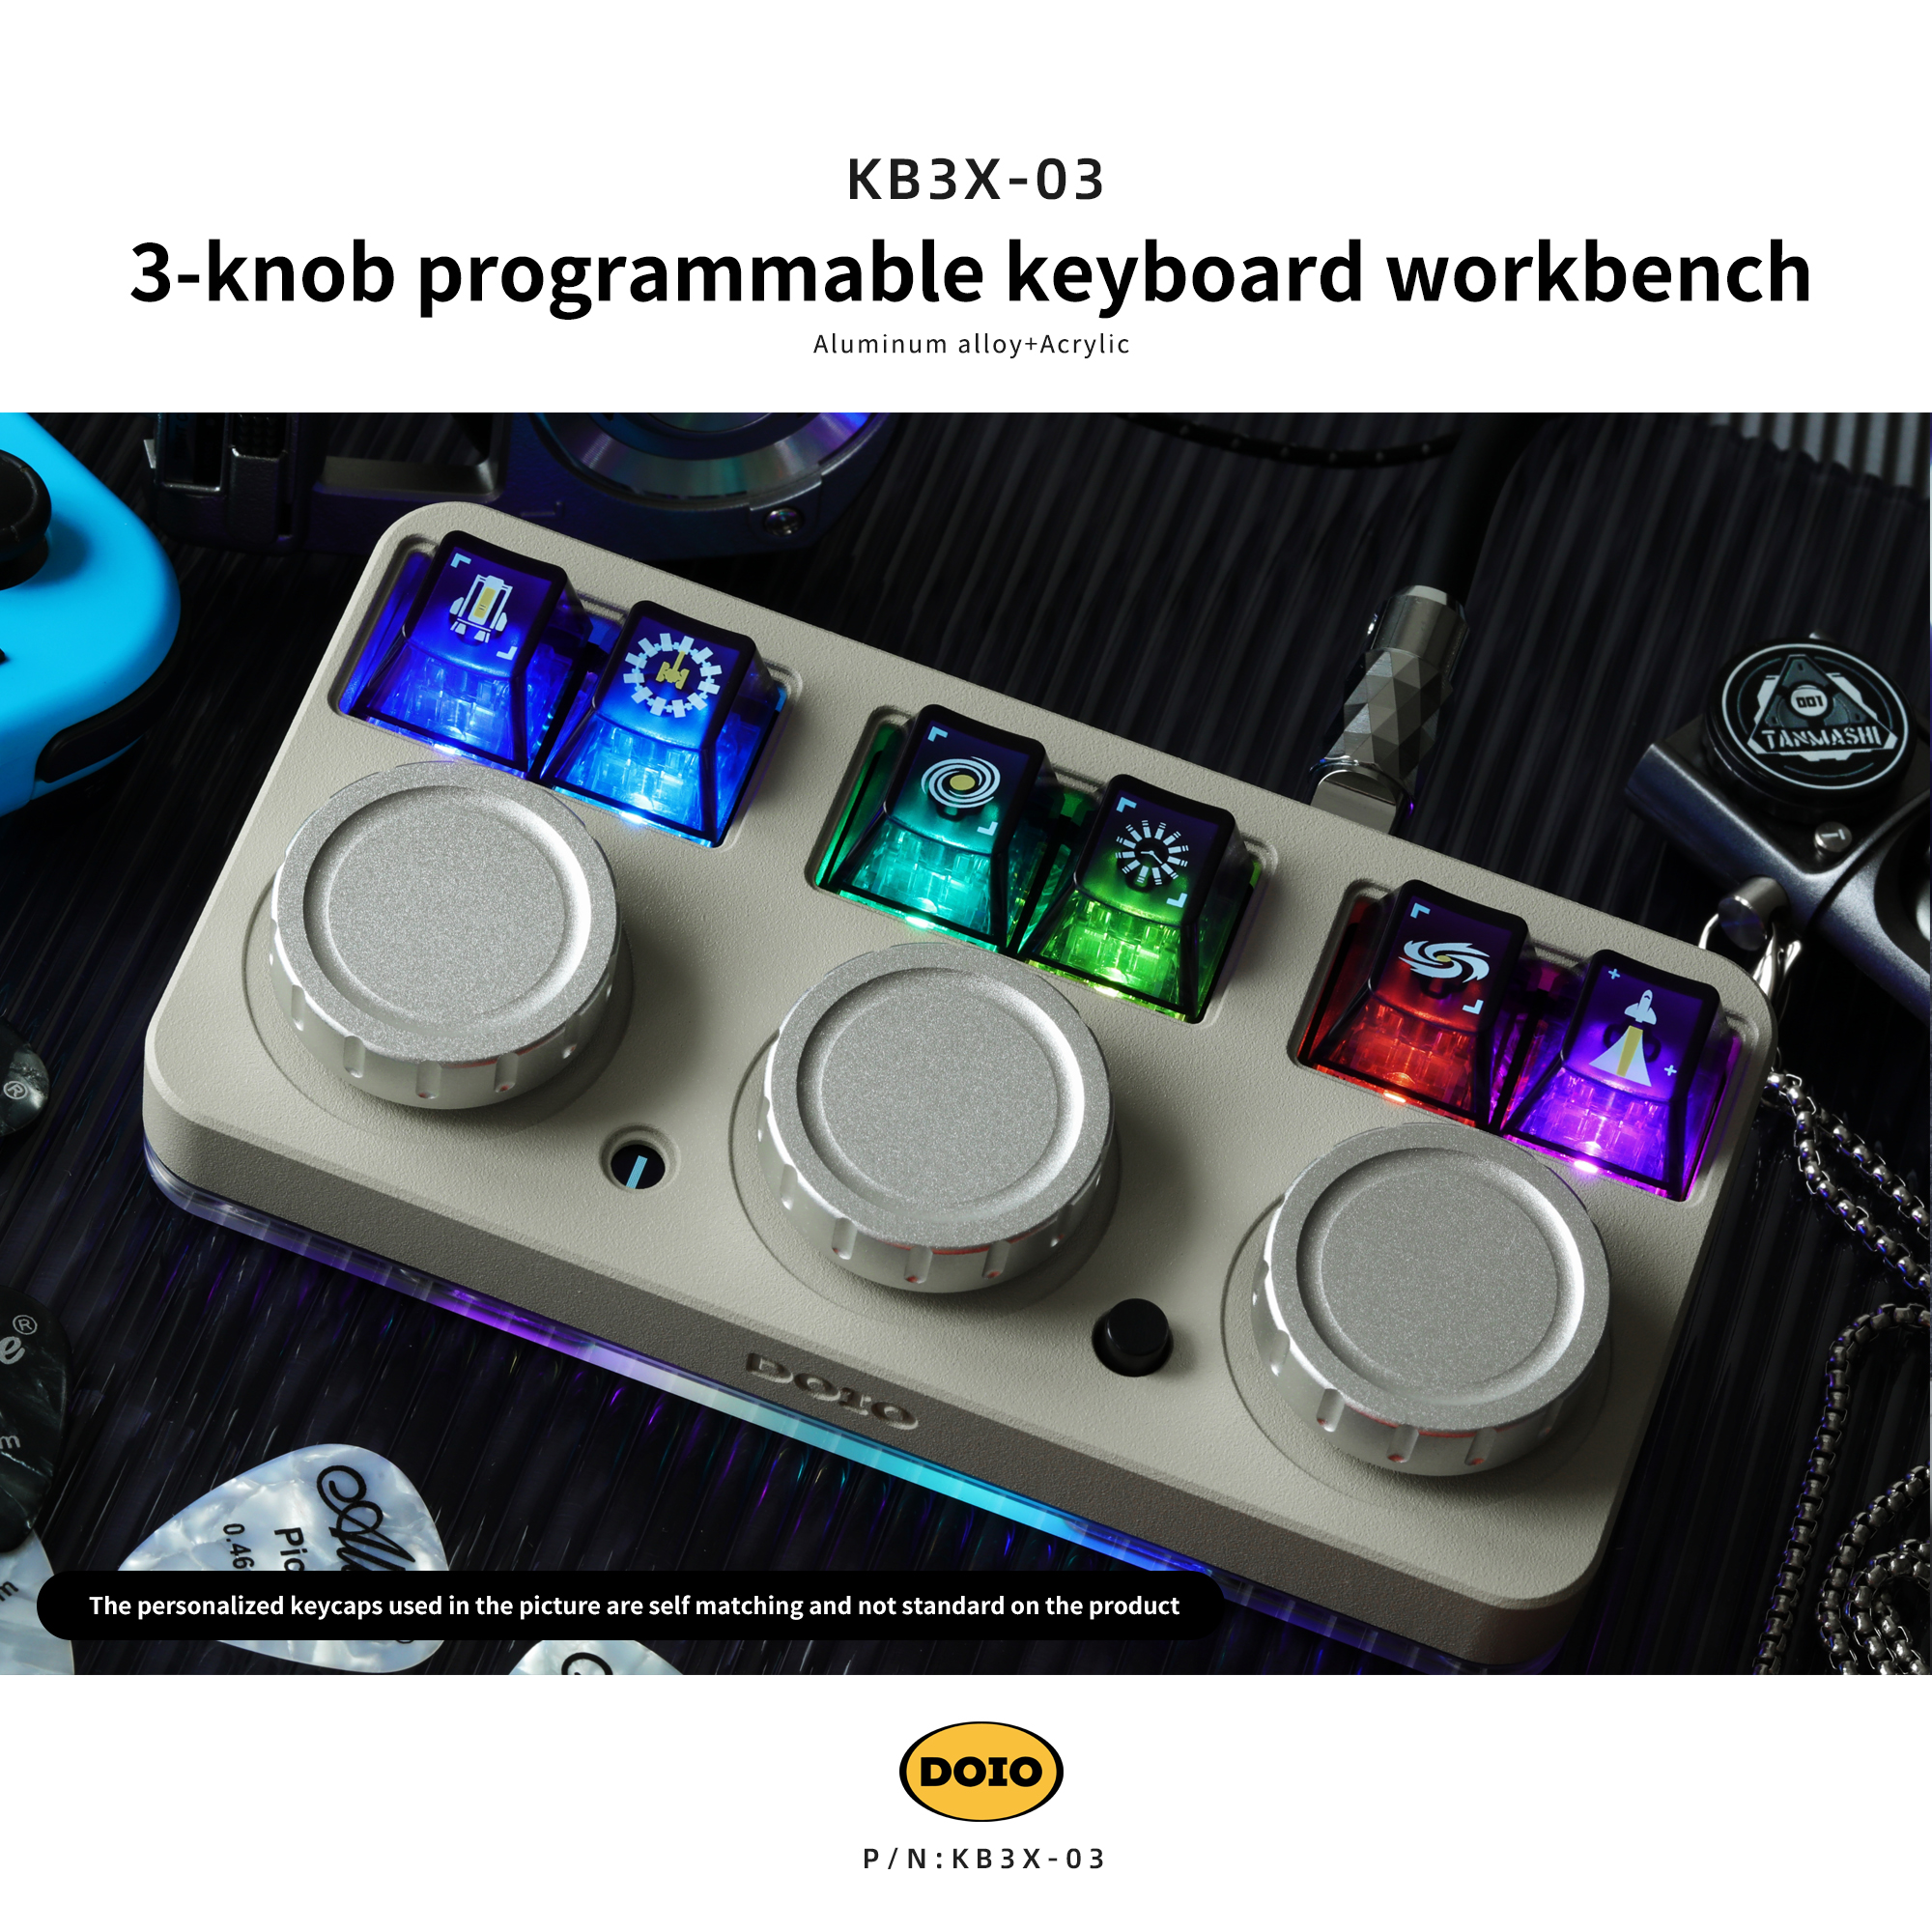 DOIO 3-knob programmable keyboard workbench KB3X-03